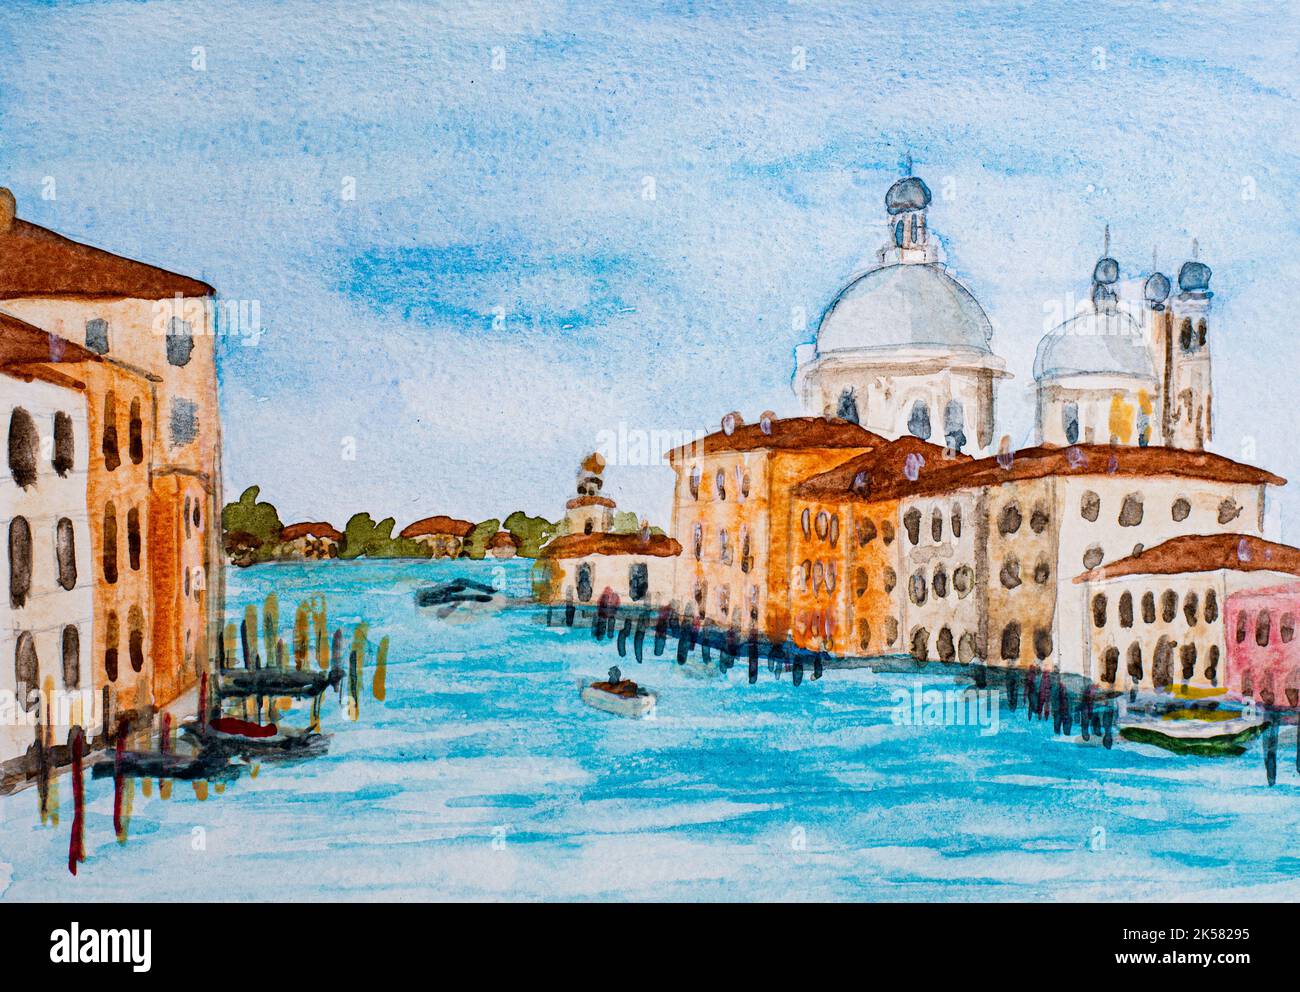 Grand Canal et basilique Santa Maria à Venise, Italie. Aquarelle. Banque D'Images